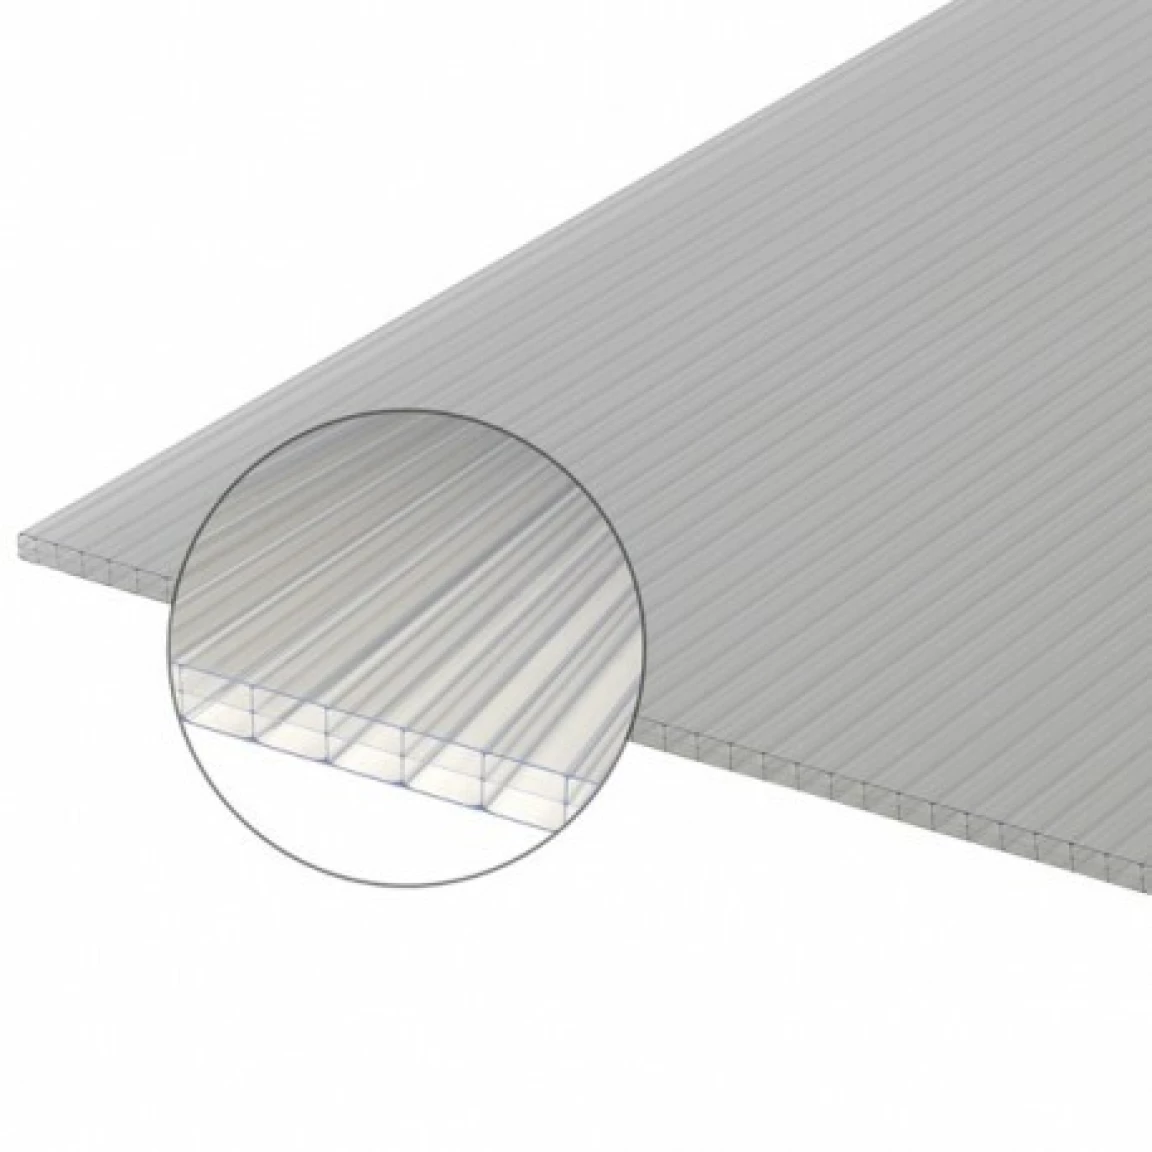 plaque polycarbonate alvéolaire épaisseur 10 mm avec un zoom pour voir la coupe de la plaque